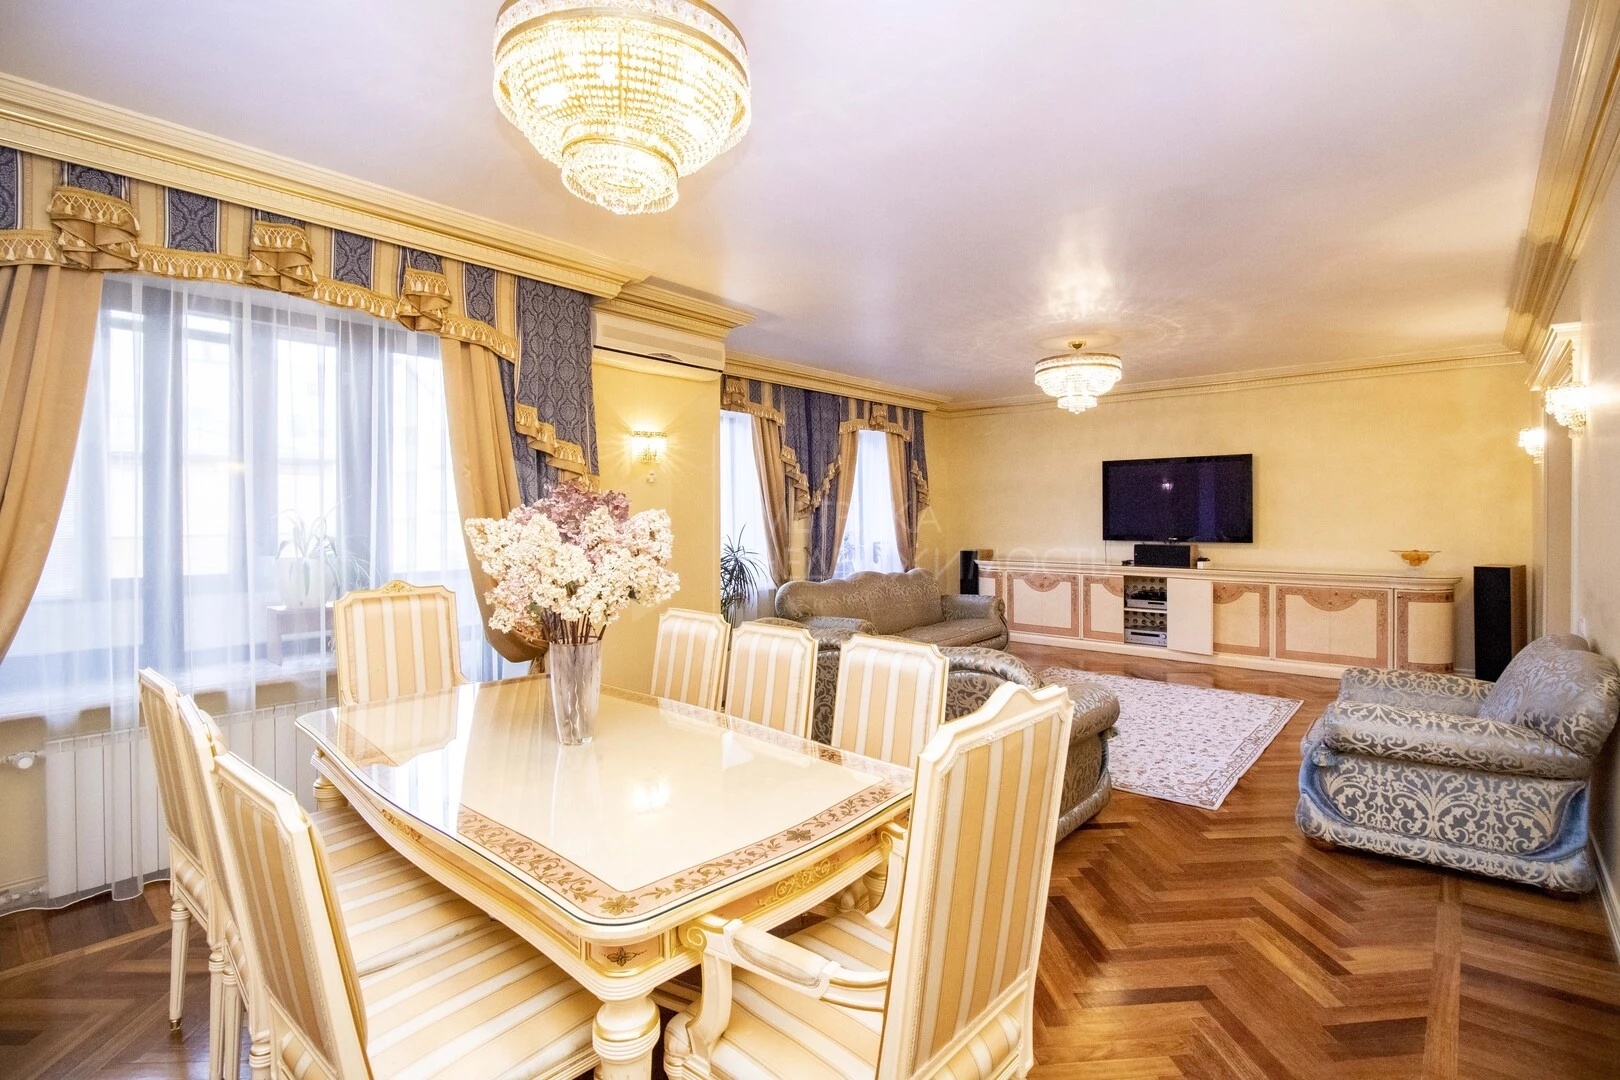 Купить квартиру до 5 млн руб. Дорогая квартира Безрукова. Квартира за 10 миллионов рублей. Квартира за 1000000. Квартира за 5 миллионов рублей.